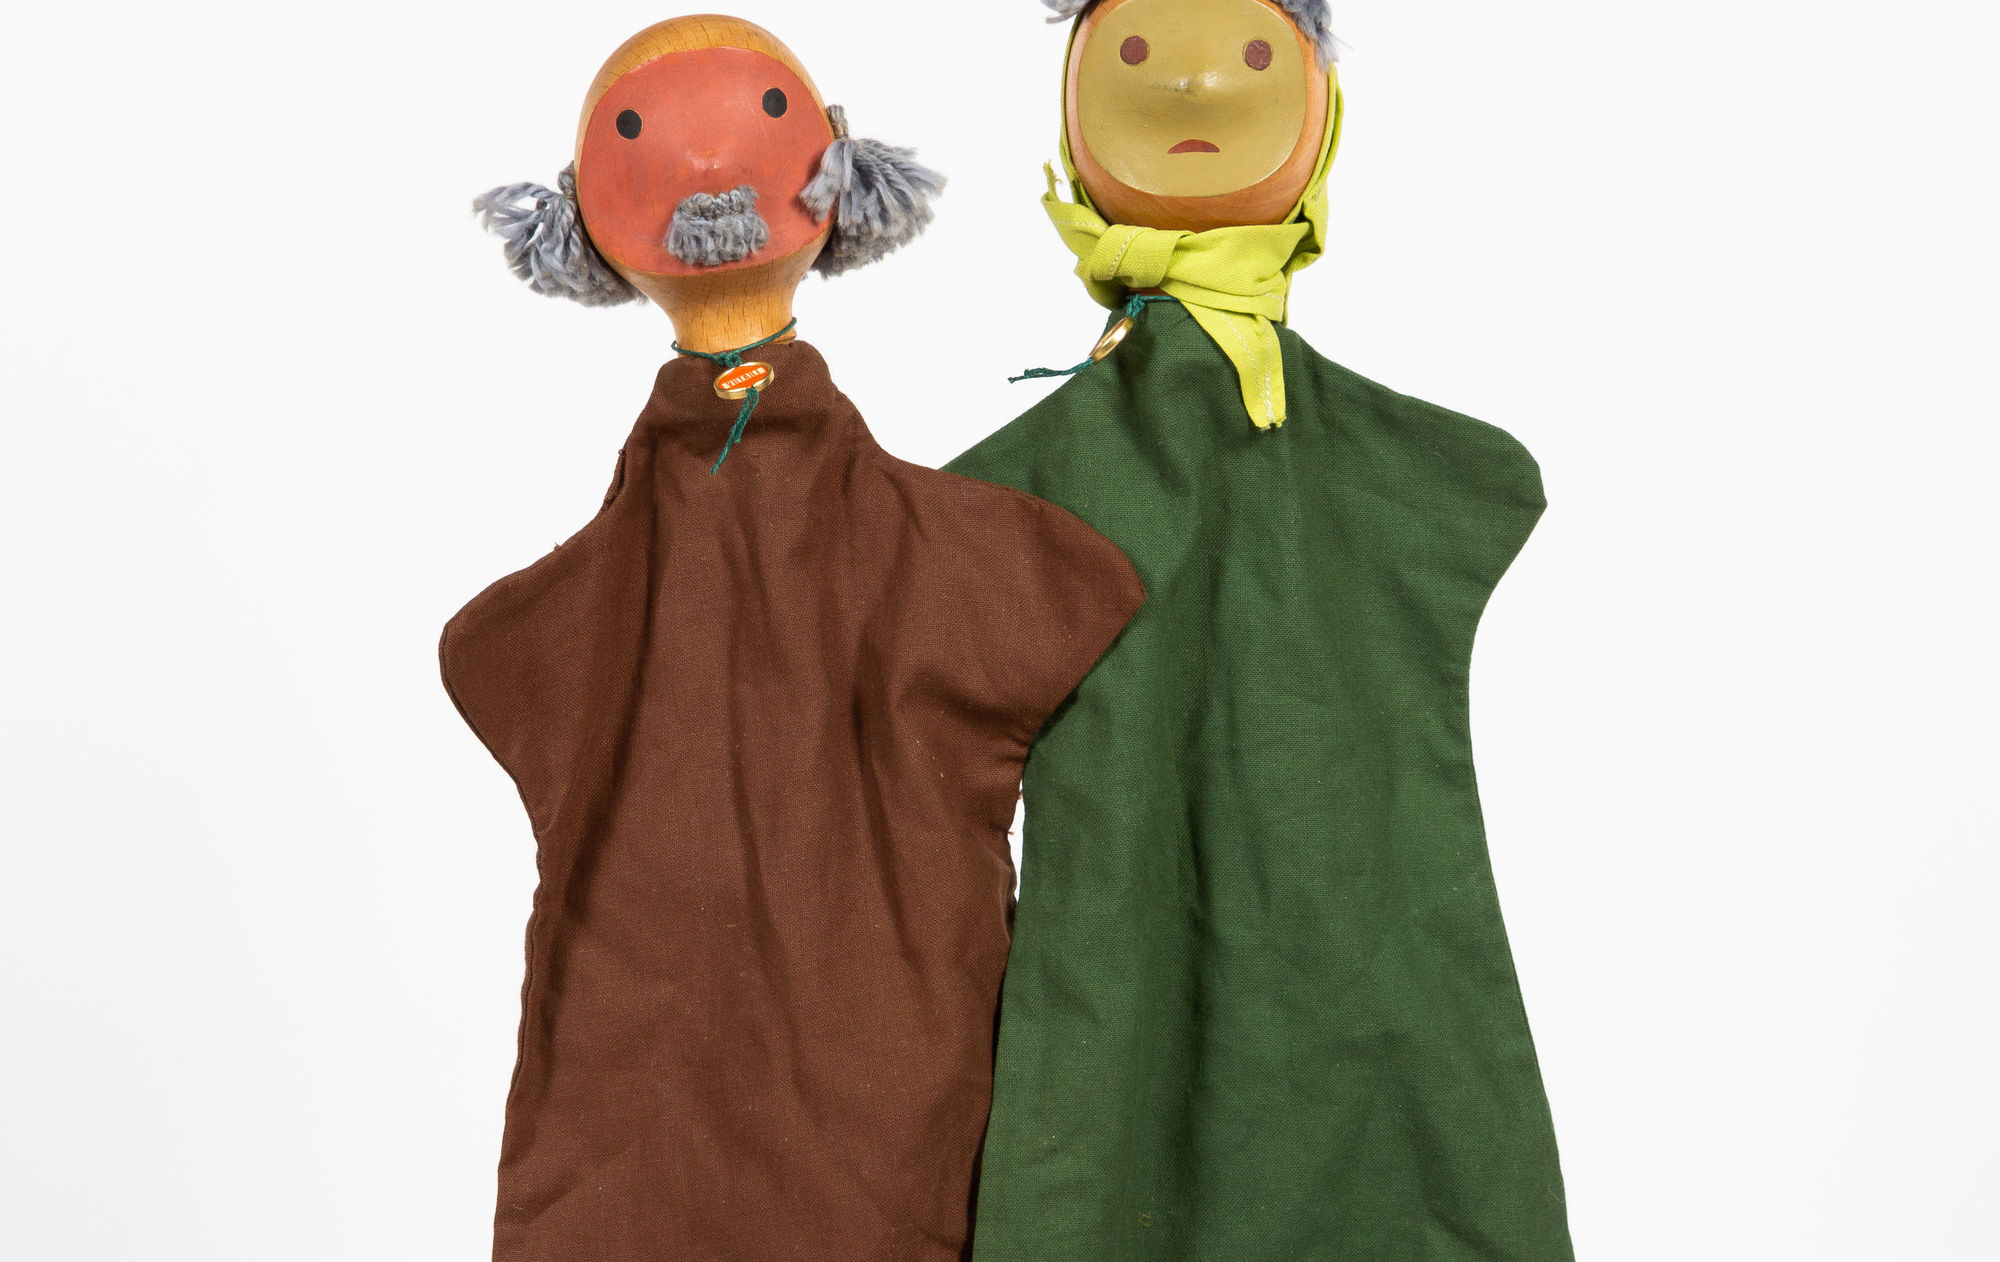 Antonio Vitali pair of puppets